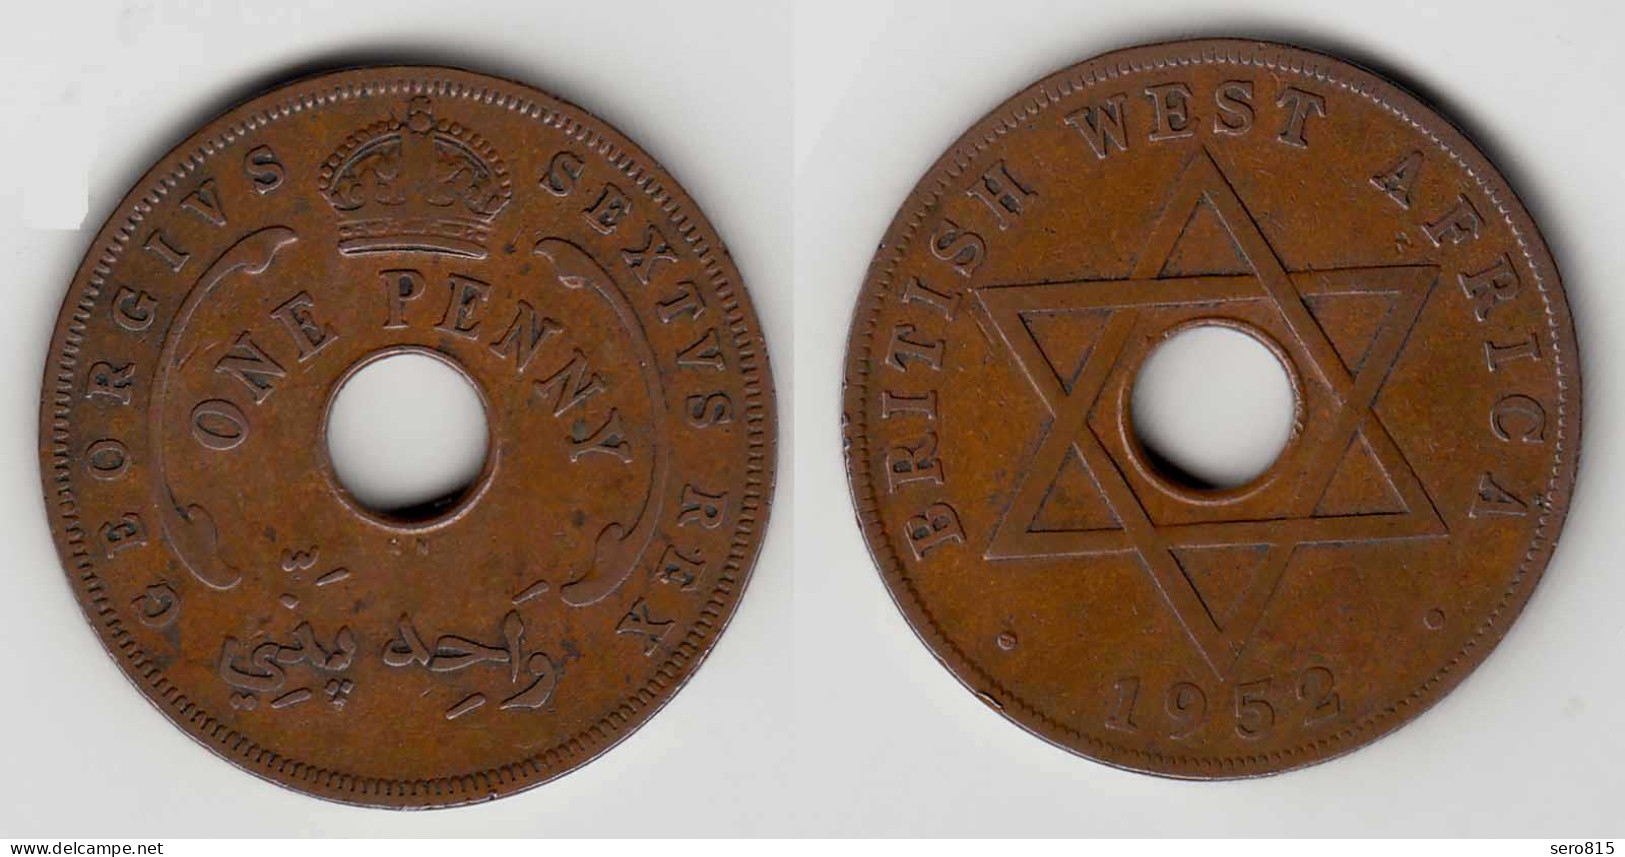 Britisch WEST-AFRIKA 1 Penny Münze 1952   (29996 - Autres – Afrique